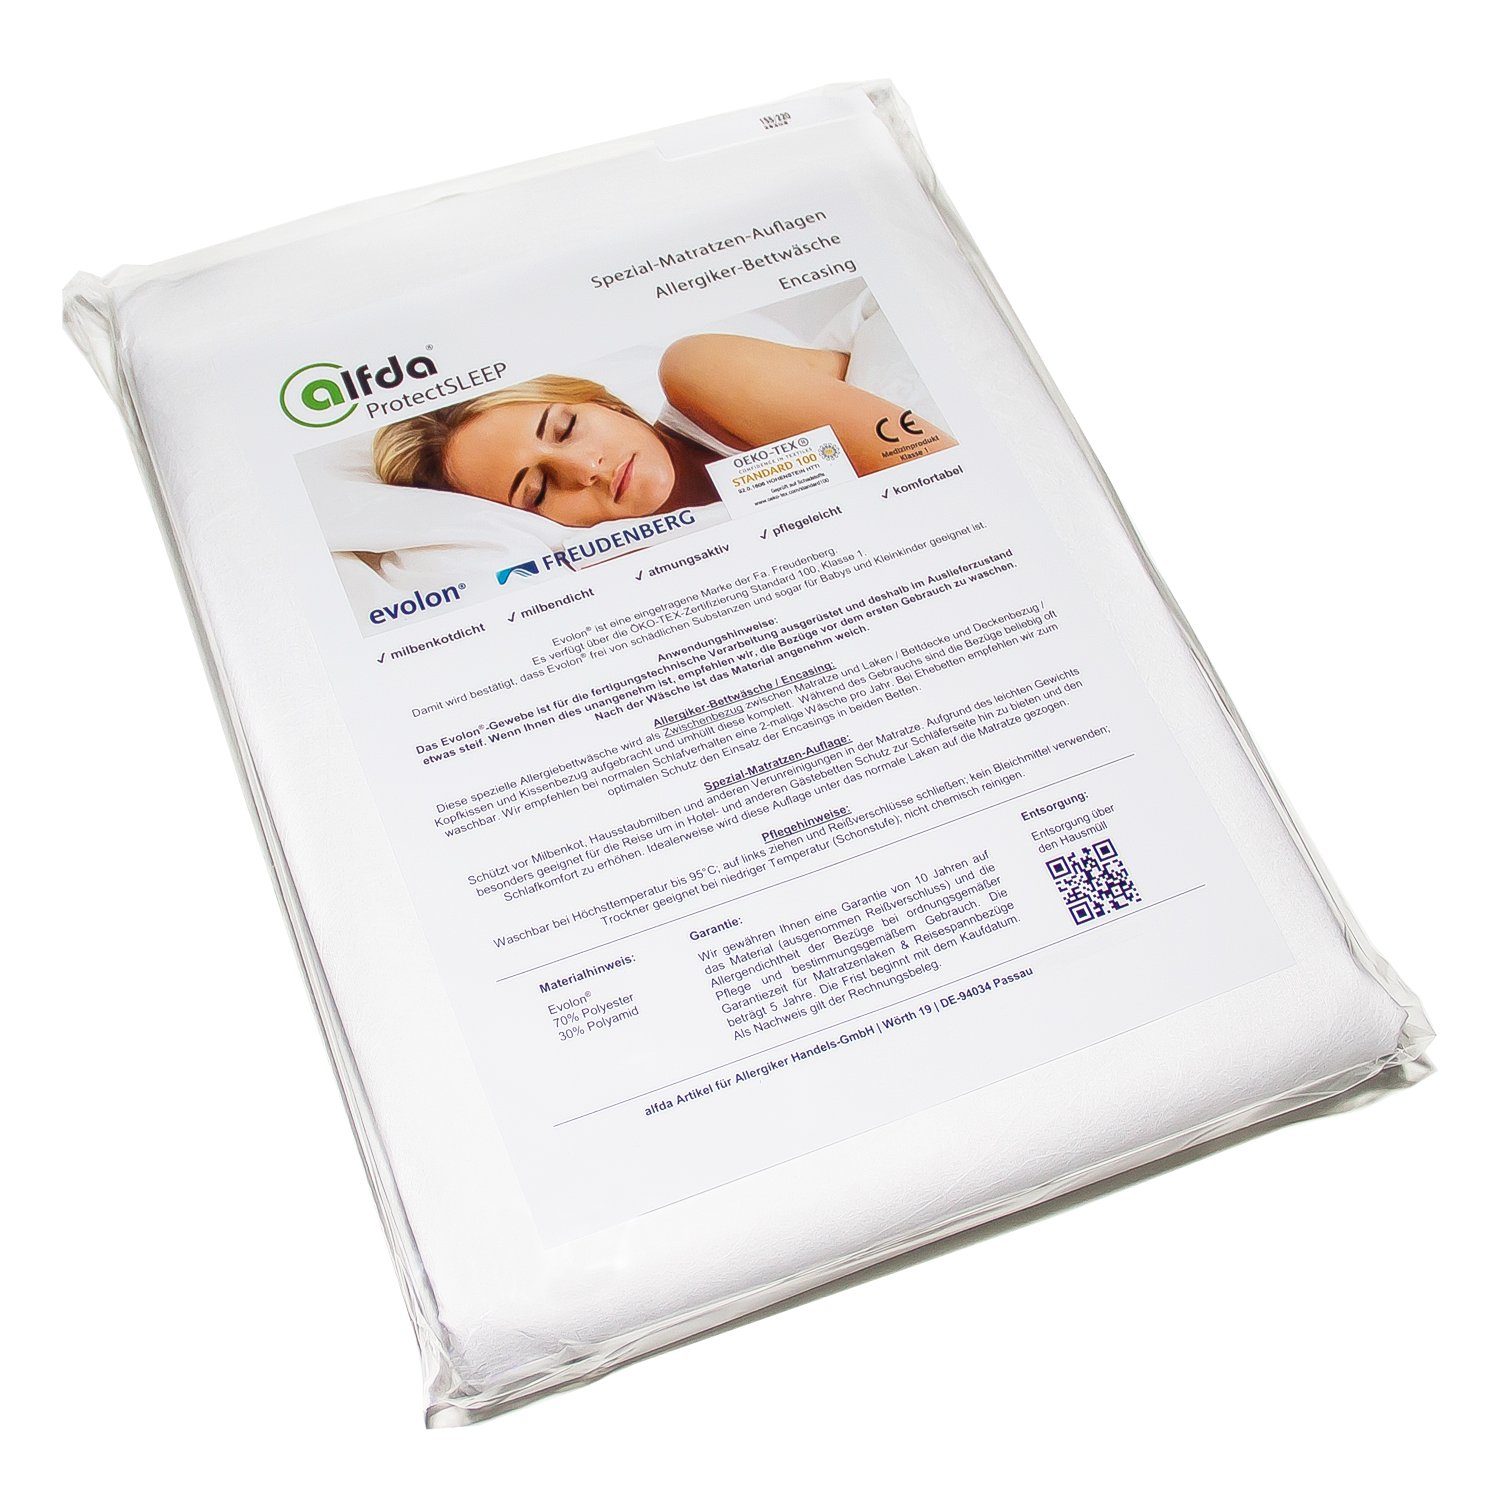 Encasing Allergiker Matratzenbezug aus Evolon alfdaProtectSLEEP, verschiedene Größen erhältlich